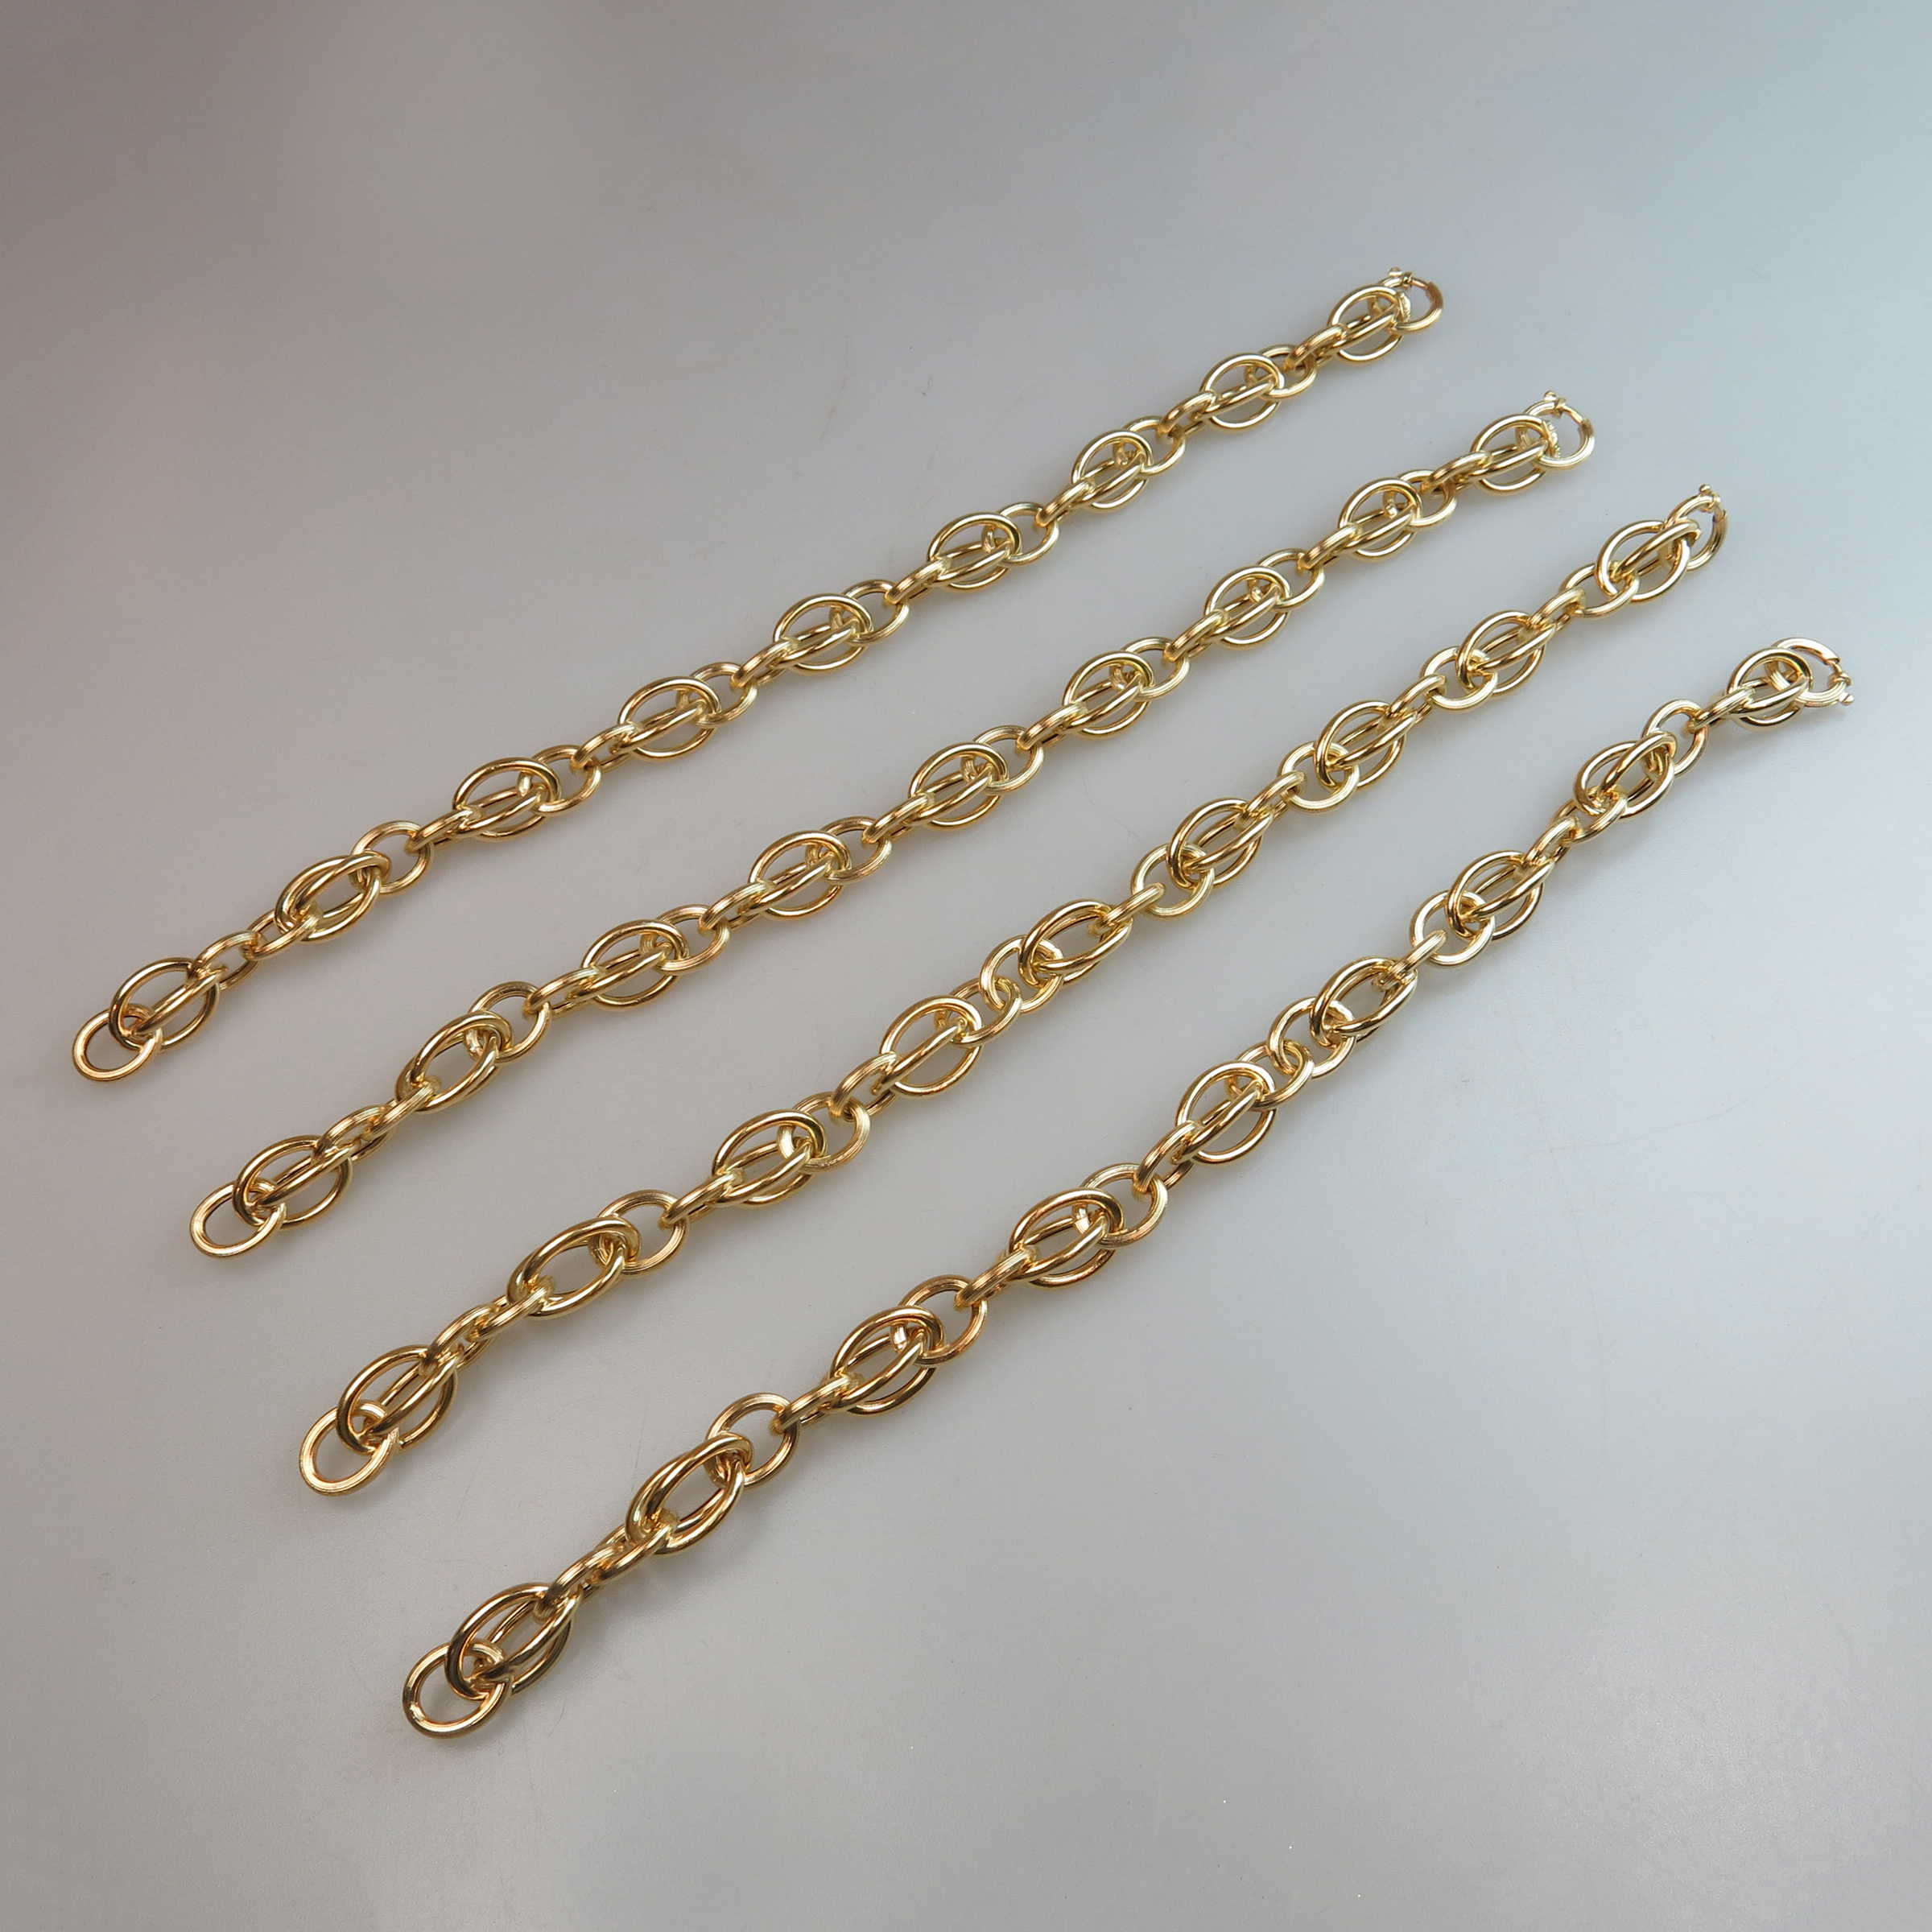 4 x 18k Yellow Gold Oval Link Bracelets